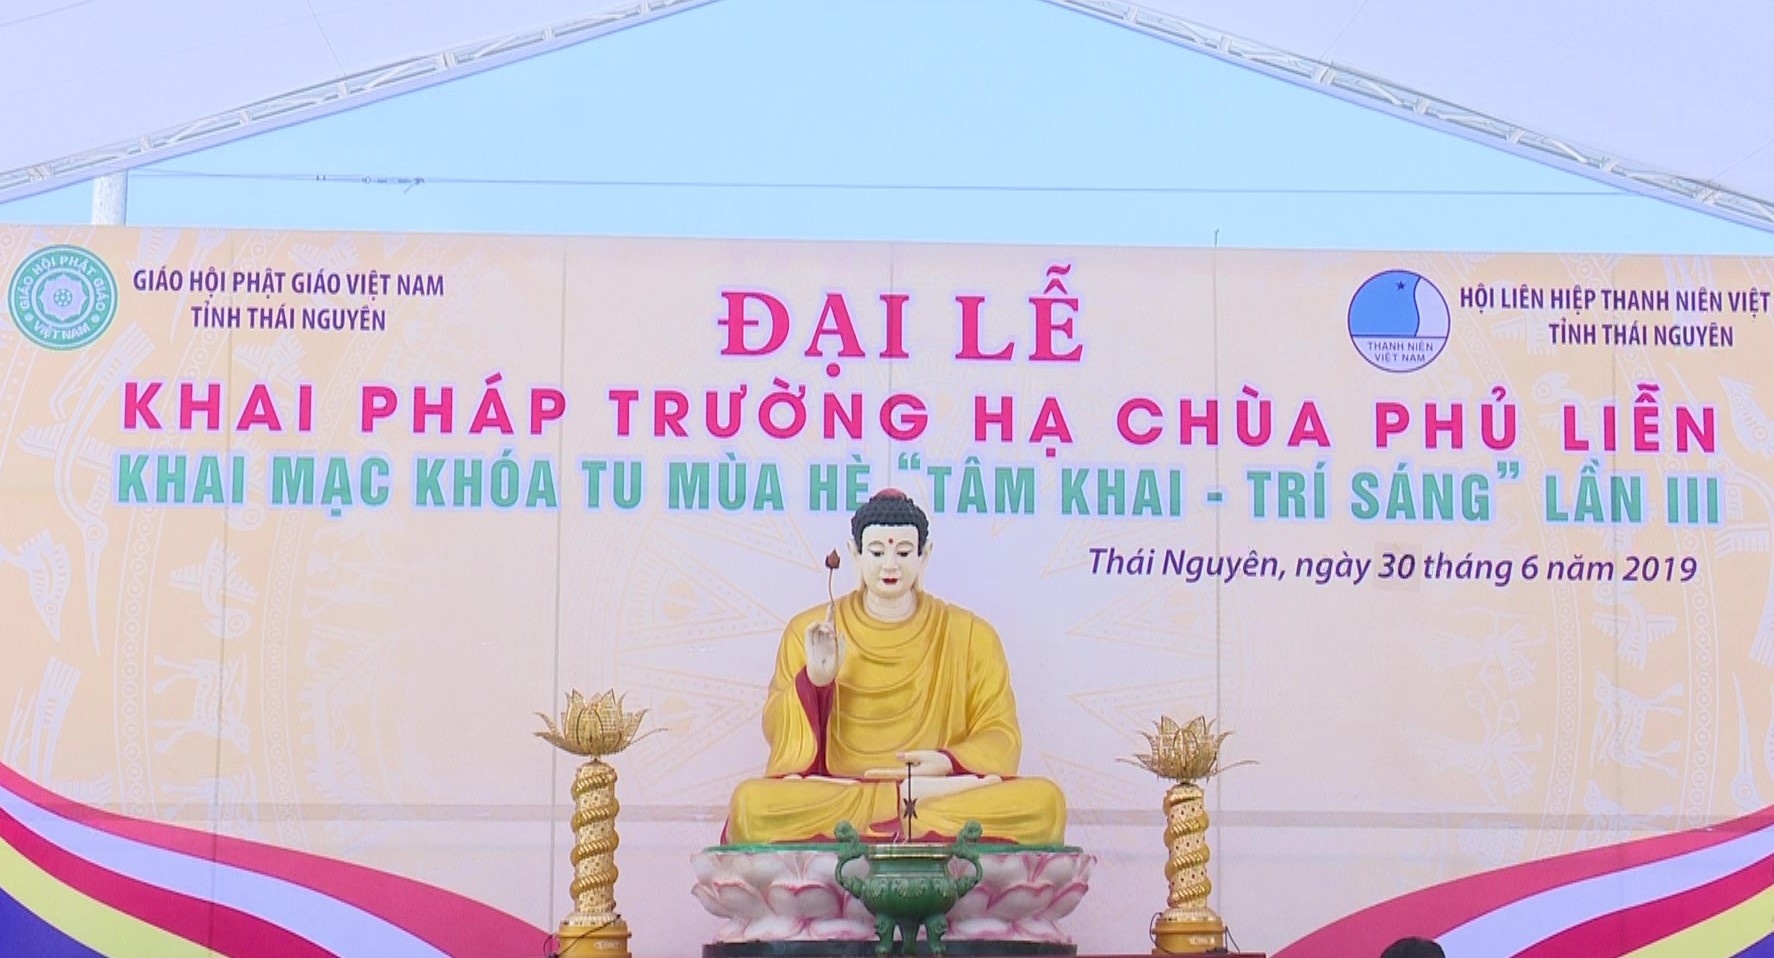 Giáo hội Phật giáo Thái Nguyên: Sẵn sàng cho Khóa tu mùa hè "Tâm khai trí sáng"